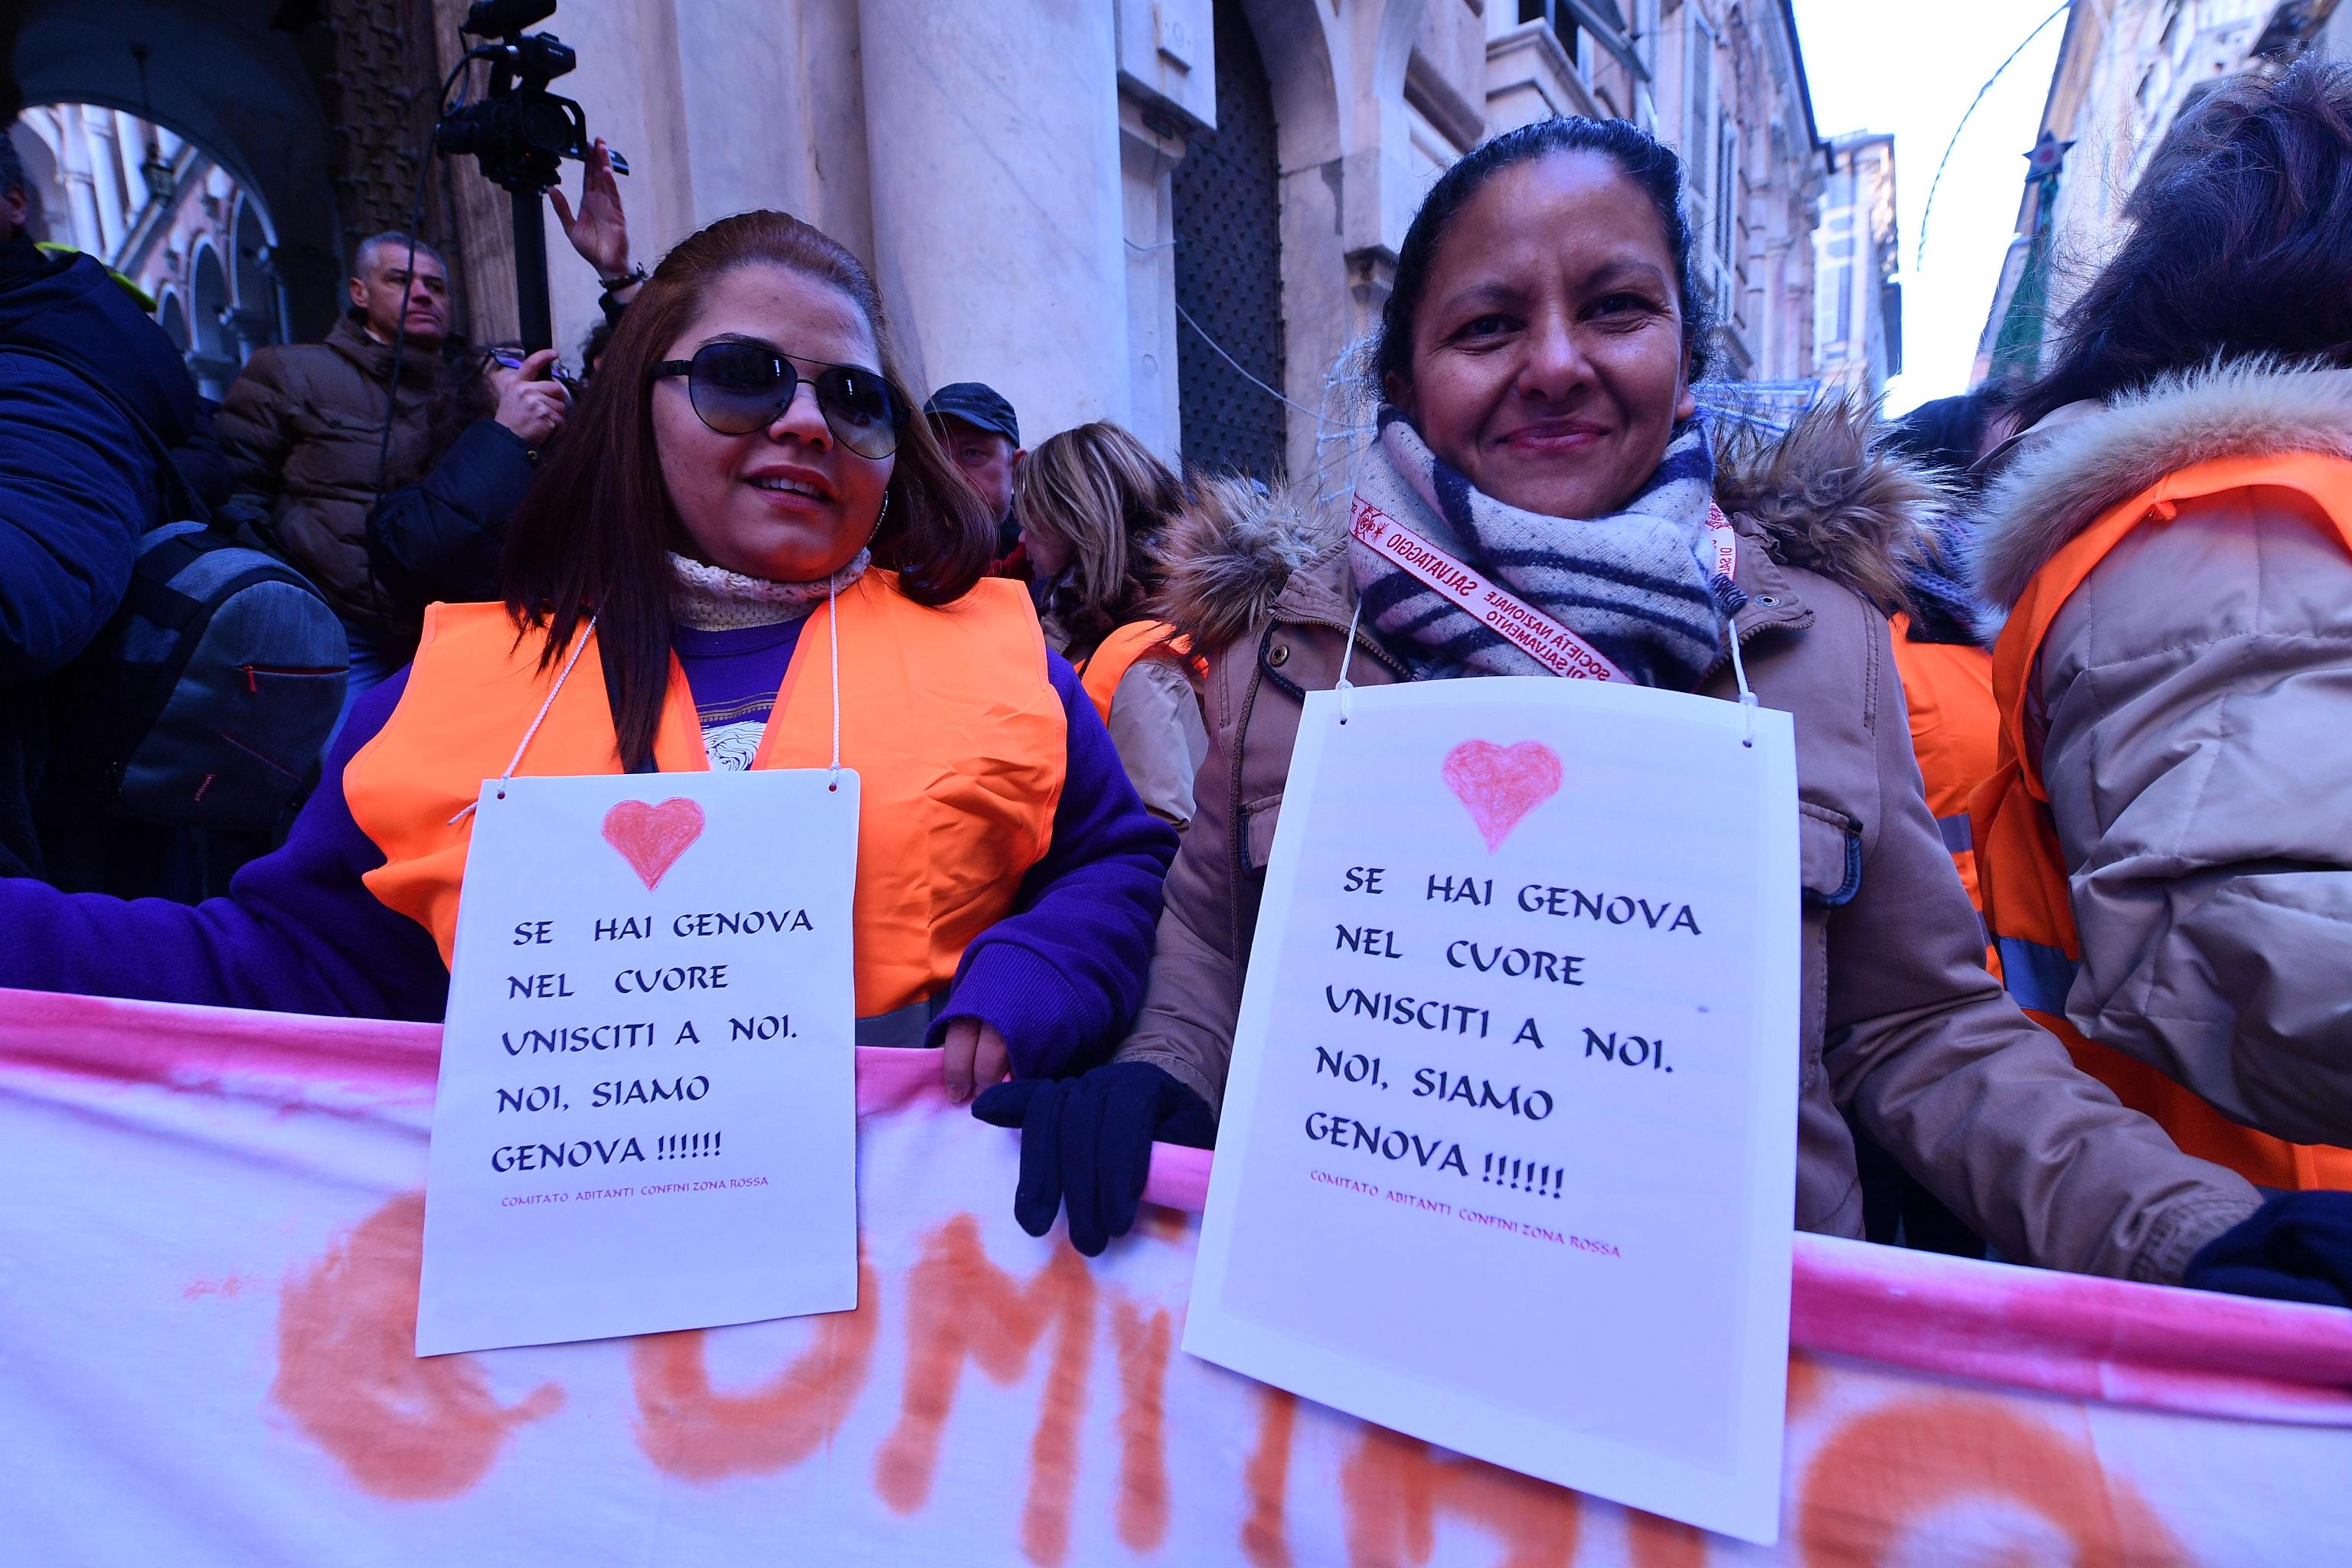 Oltre agli striscioni i manifestanti portano un cartello al collo: "Se hai un cuore unisciti a noi, noi siamo Genova"